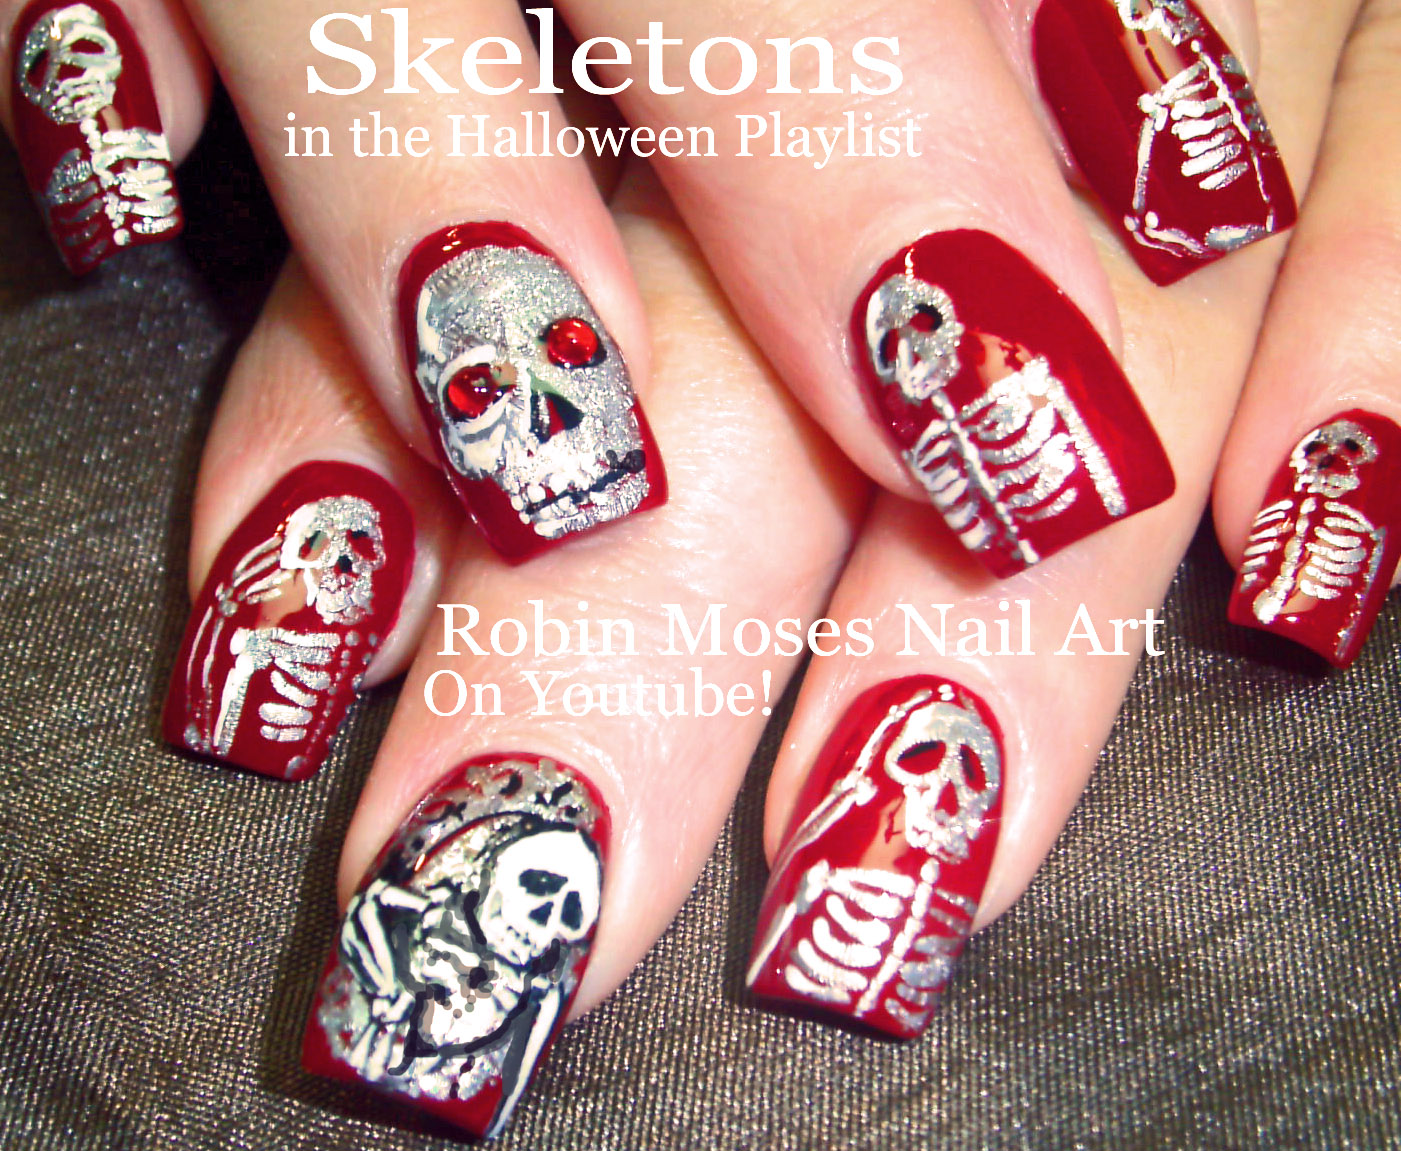 9. Skeleton Hands Nails - wide 5